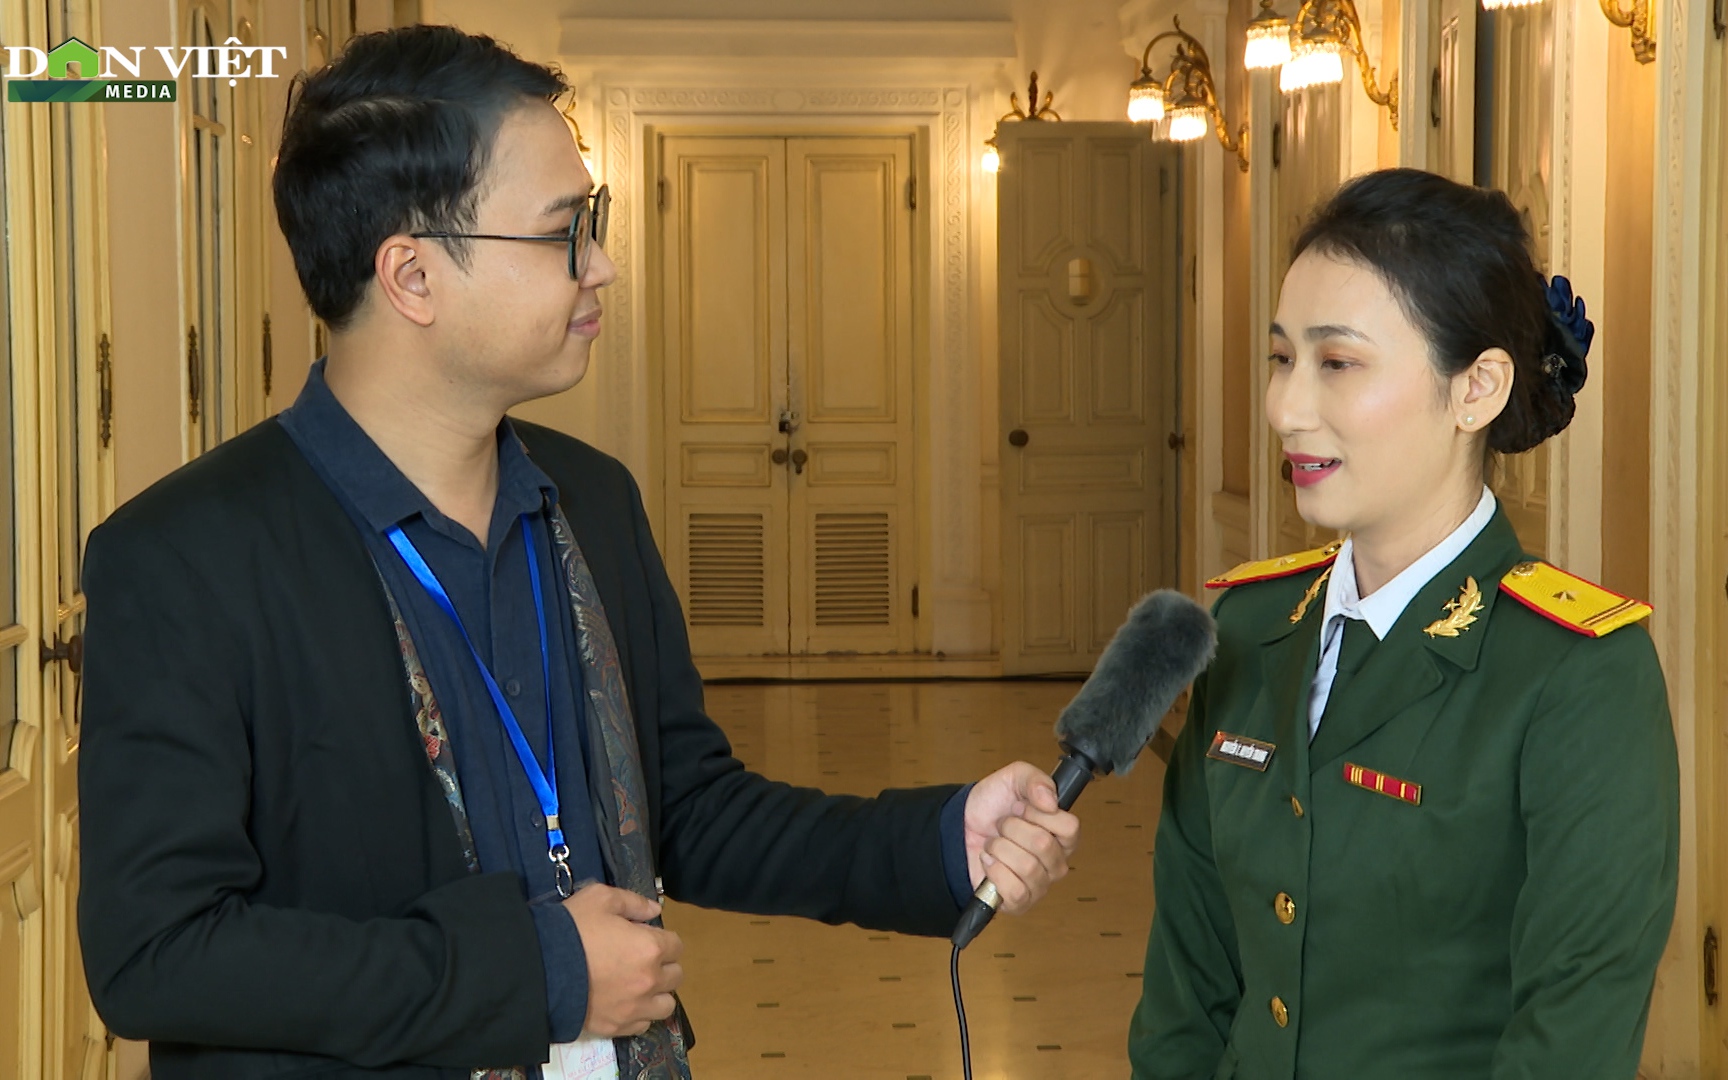 Thiếu tá Nguyễn Thị Huyền Trang: Kỷ niệm đáng nhớ từ "Ngày cuối tuần cùng dân"